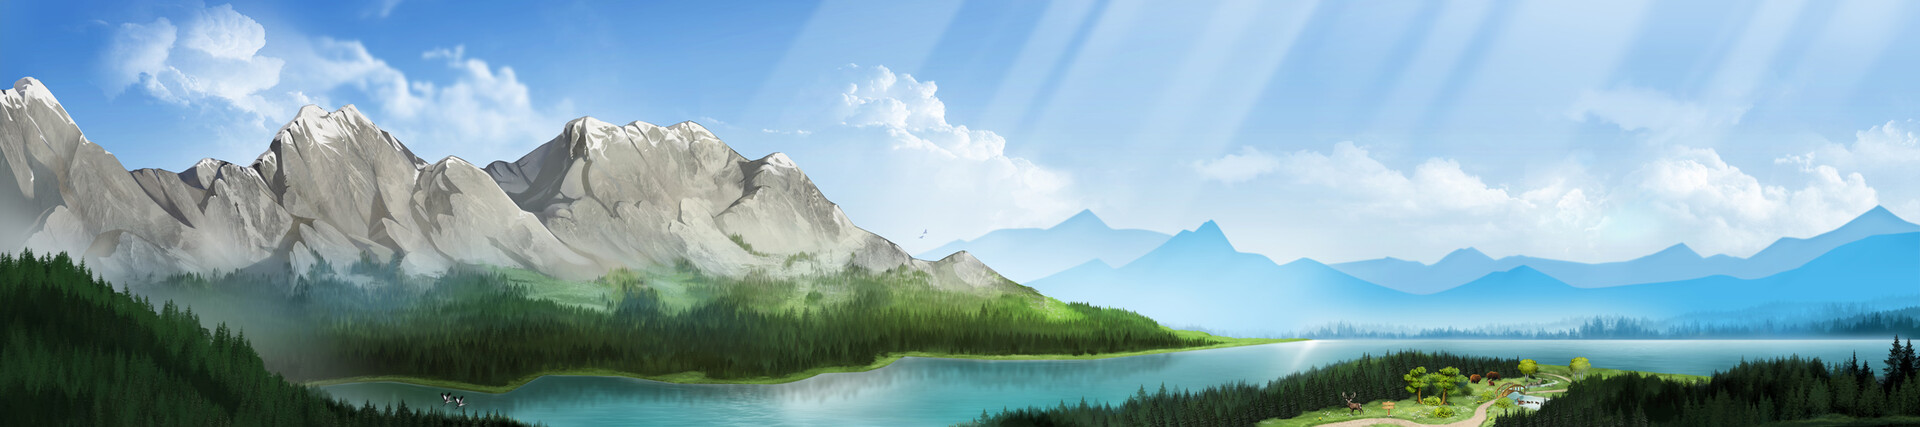 ArtStation - Mountain landscape -banner for EarthRangers